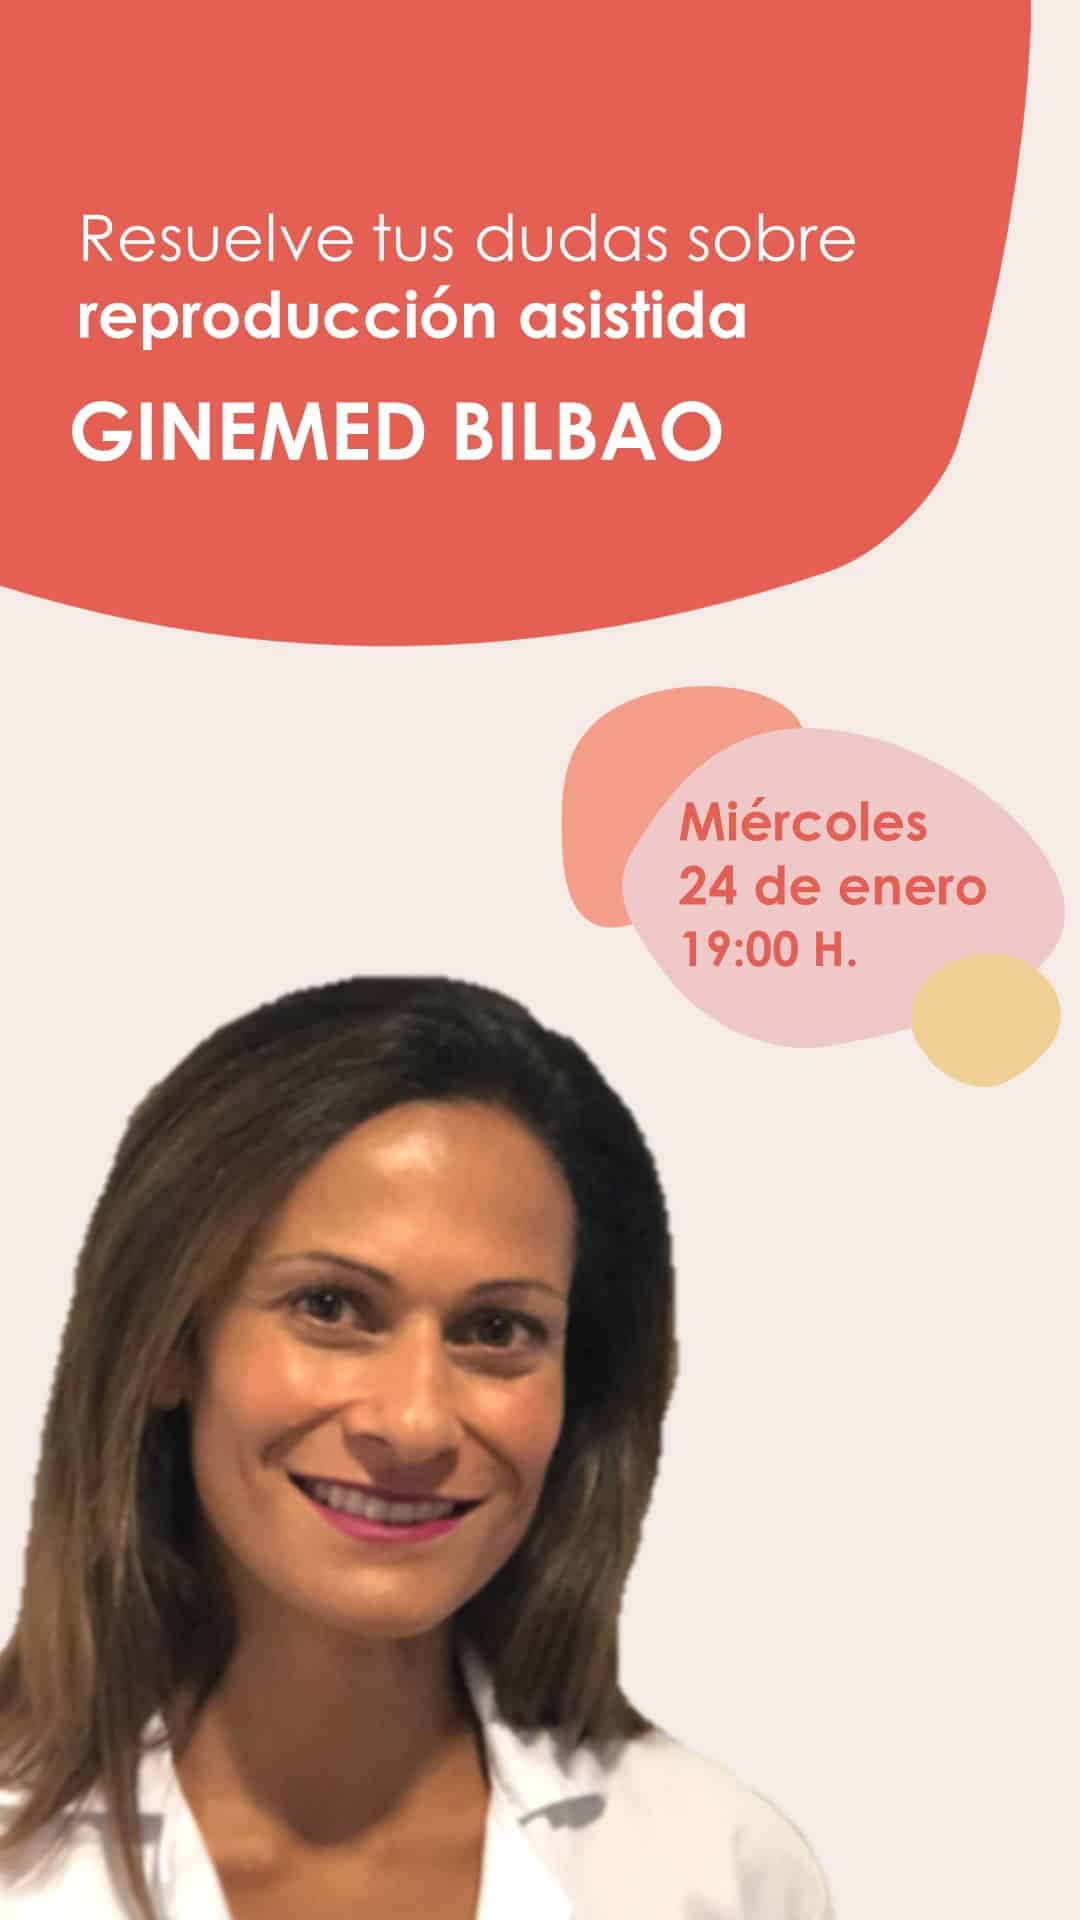 Instagram Live desde la clínica de reproducción asistida Ginemed Bilbao con la Dra. Marina González